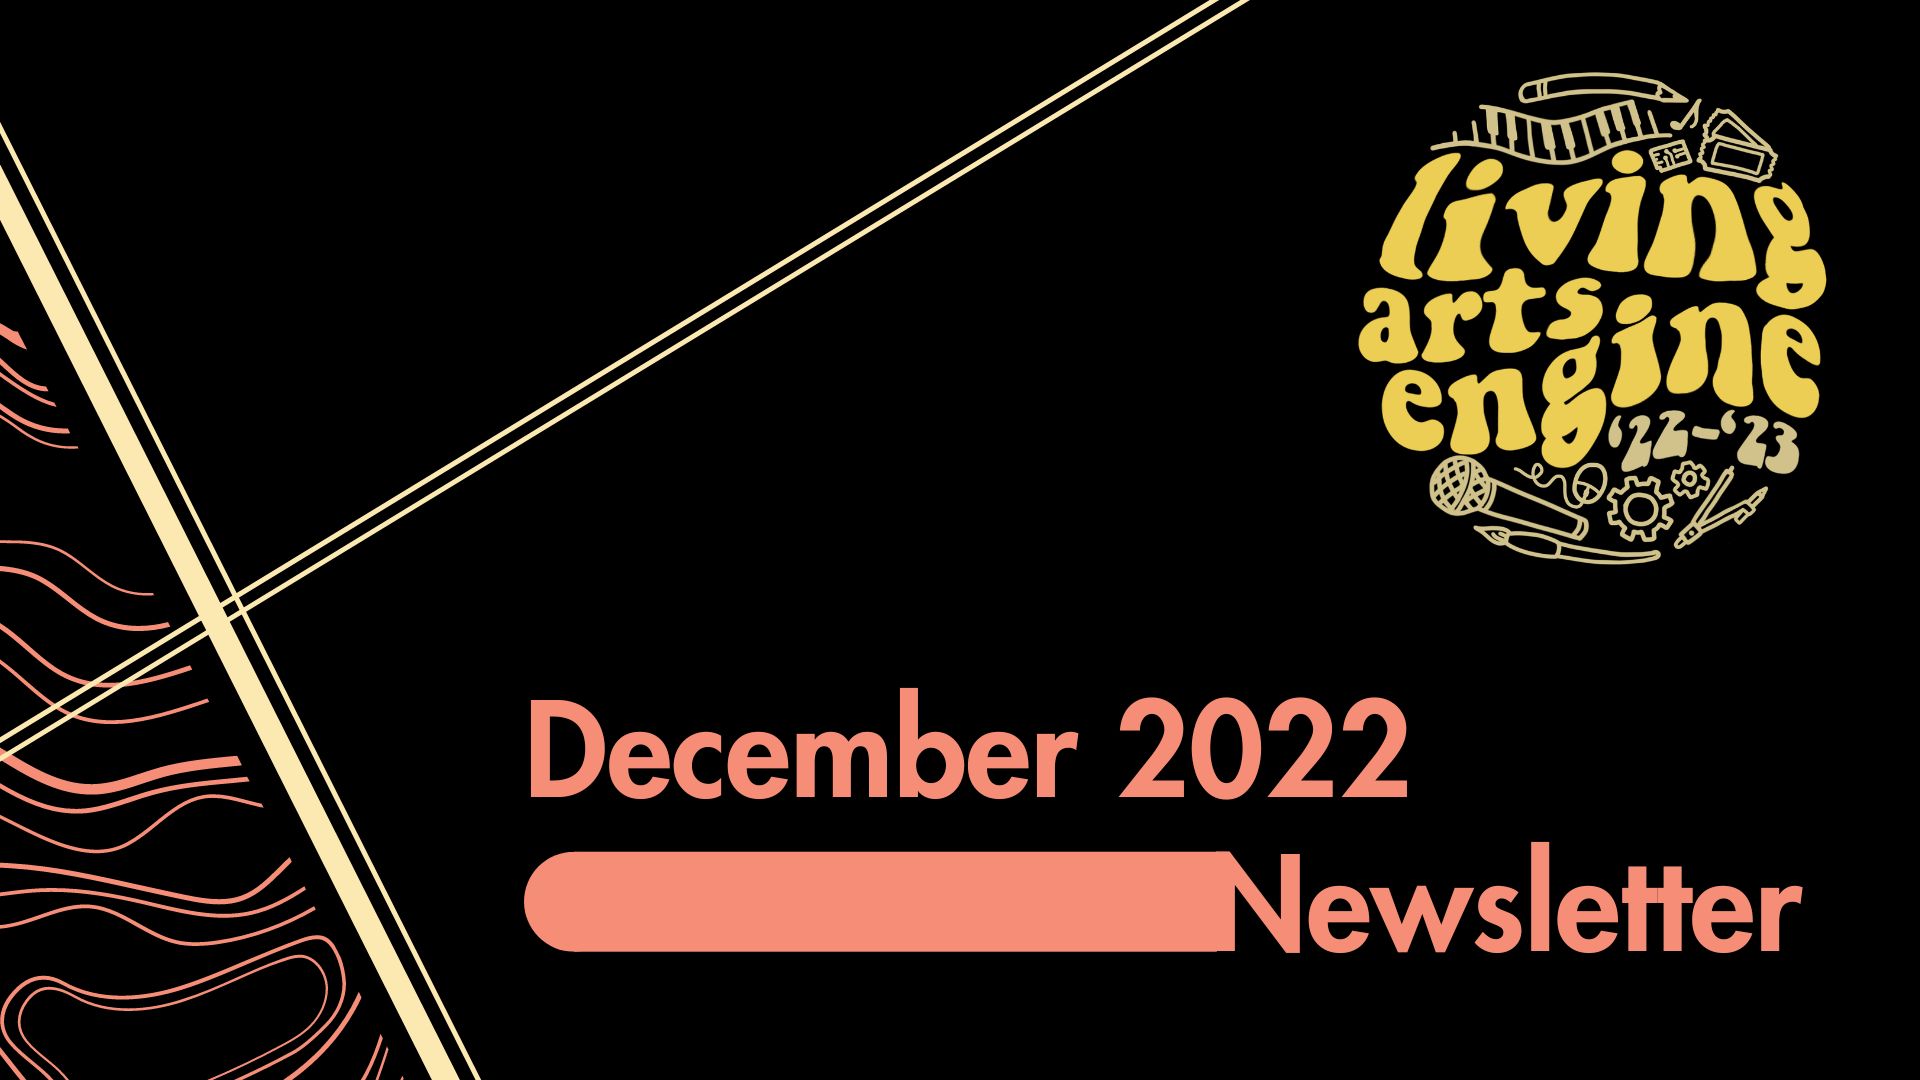 December 2022 Newsletter Cover